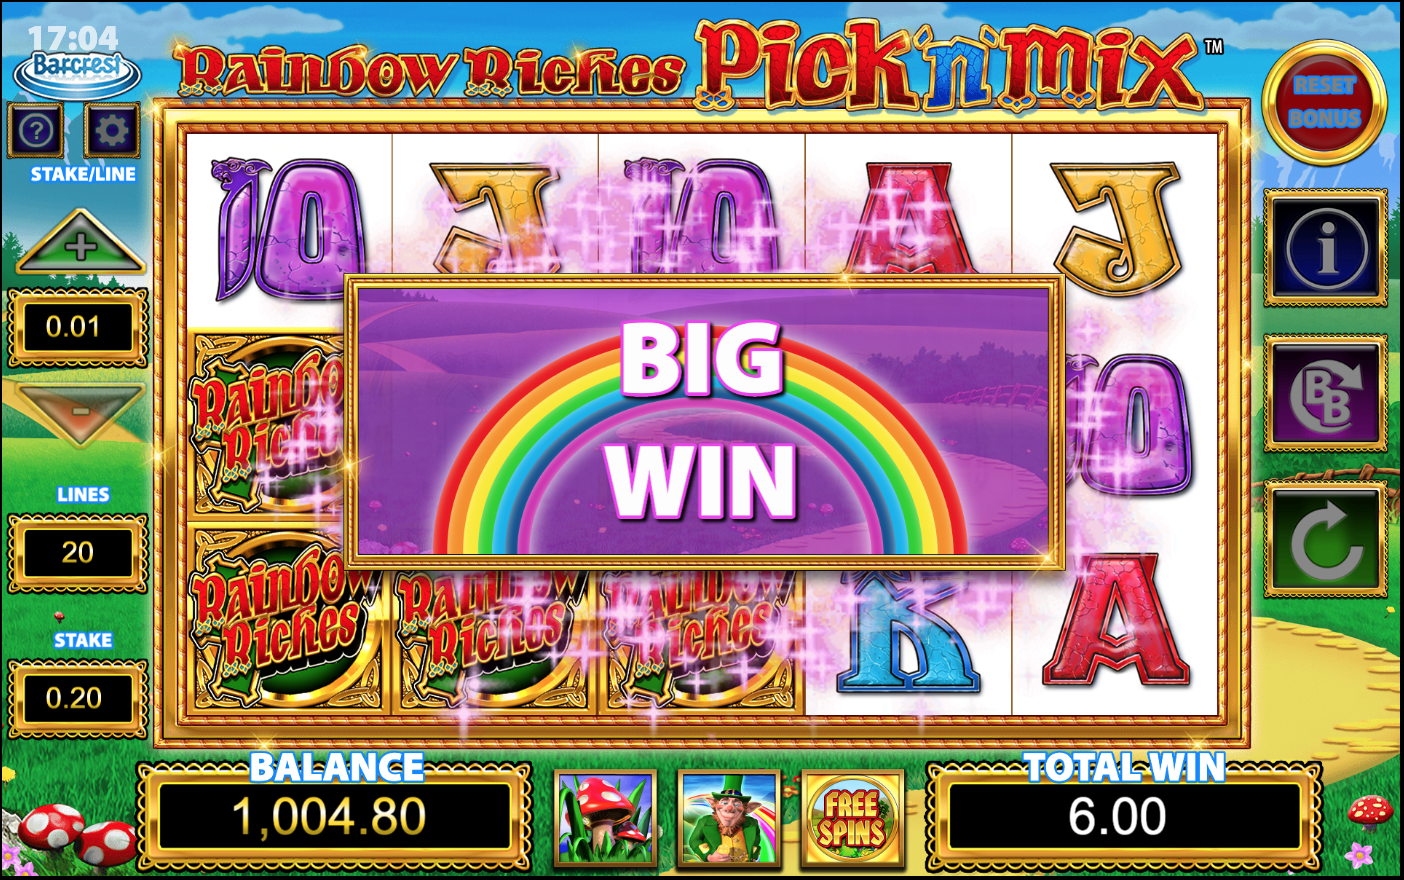 Rainbow Riches Pick'n'Mix big win